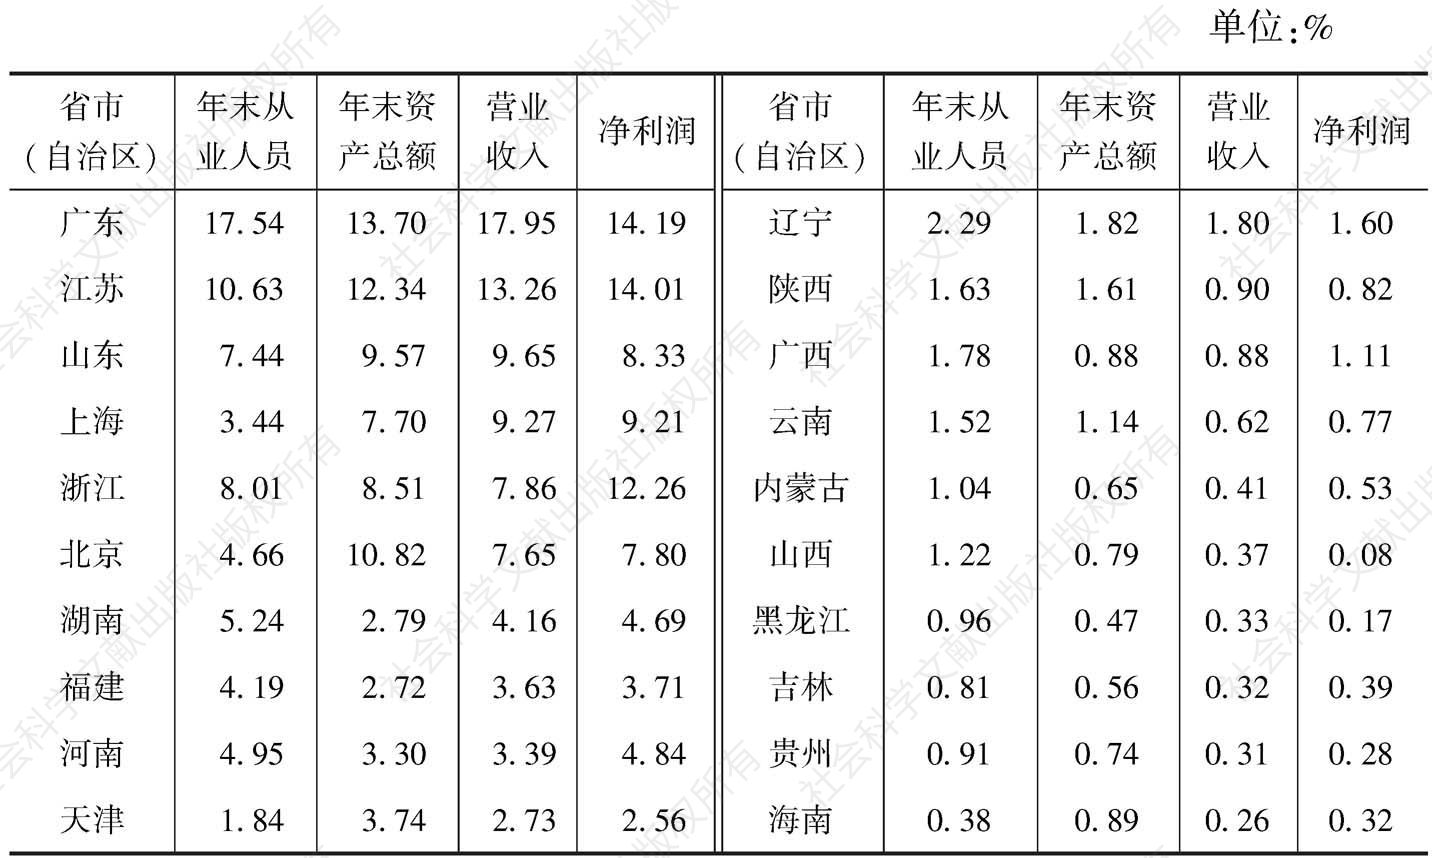 表10-1 2013年全国文化产业主要经济指标中各省市（自治区）所占比重